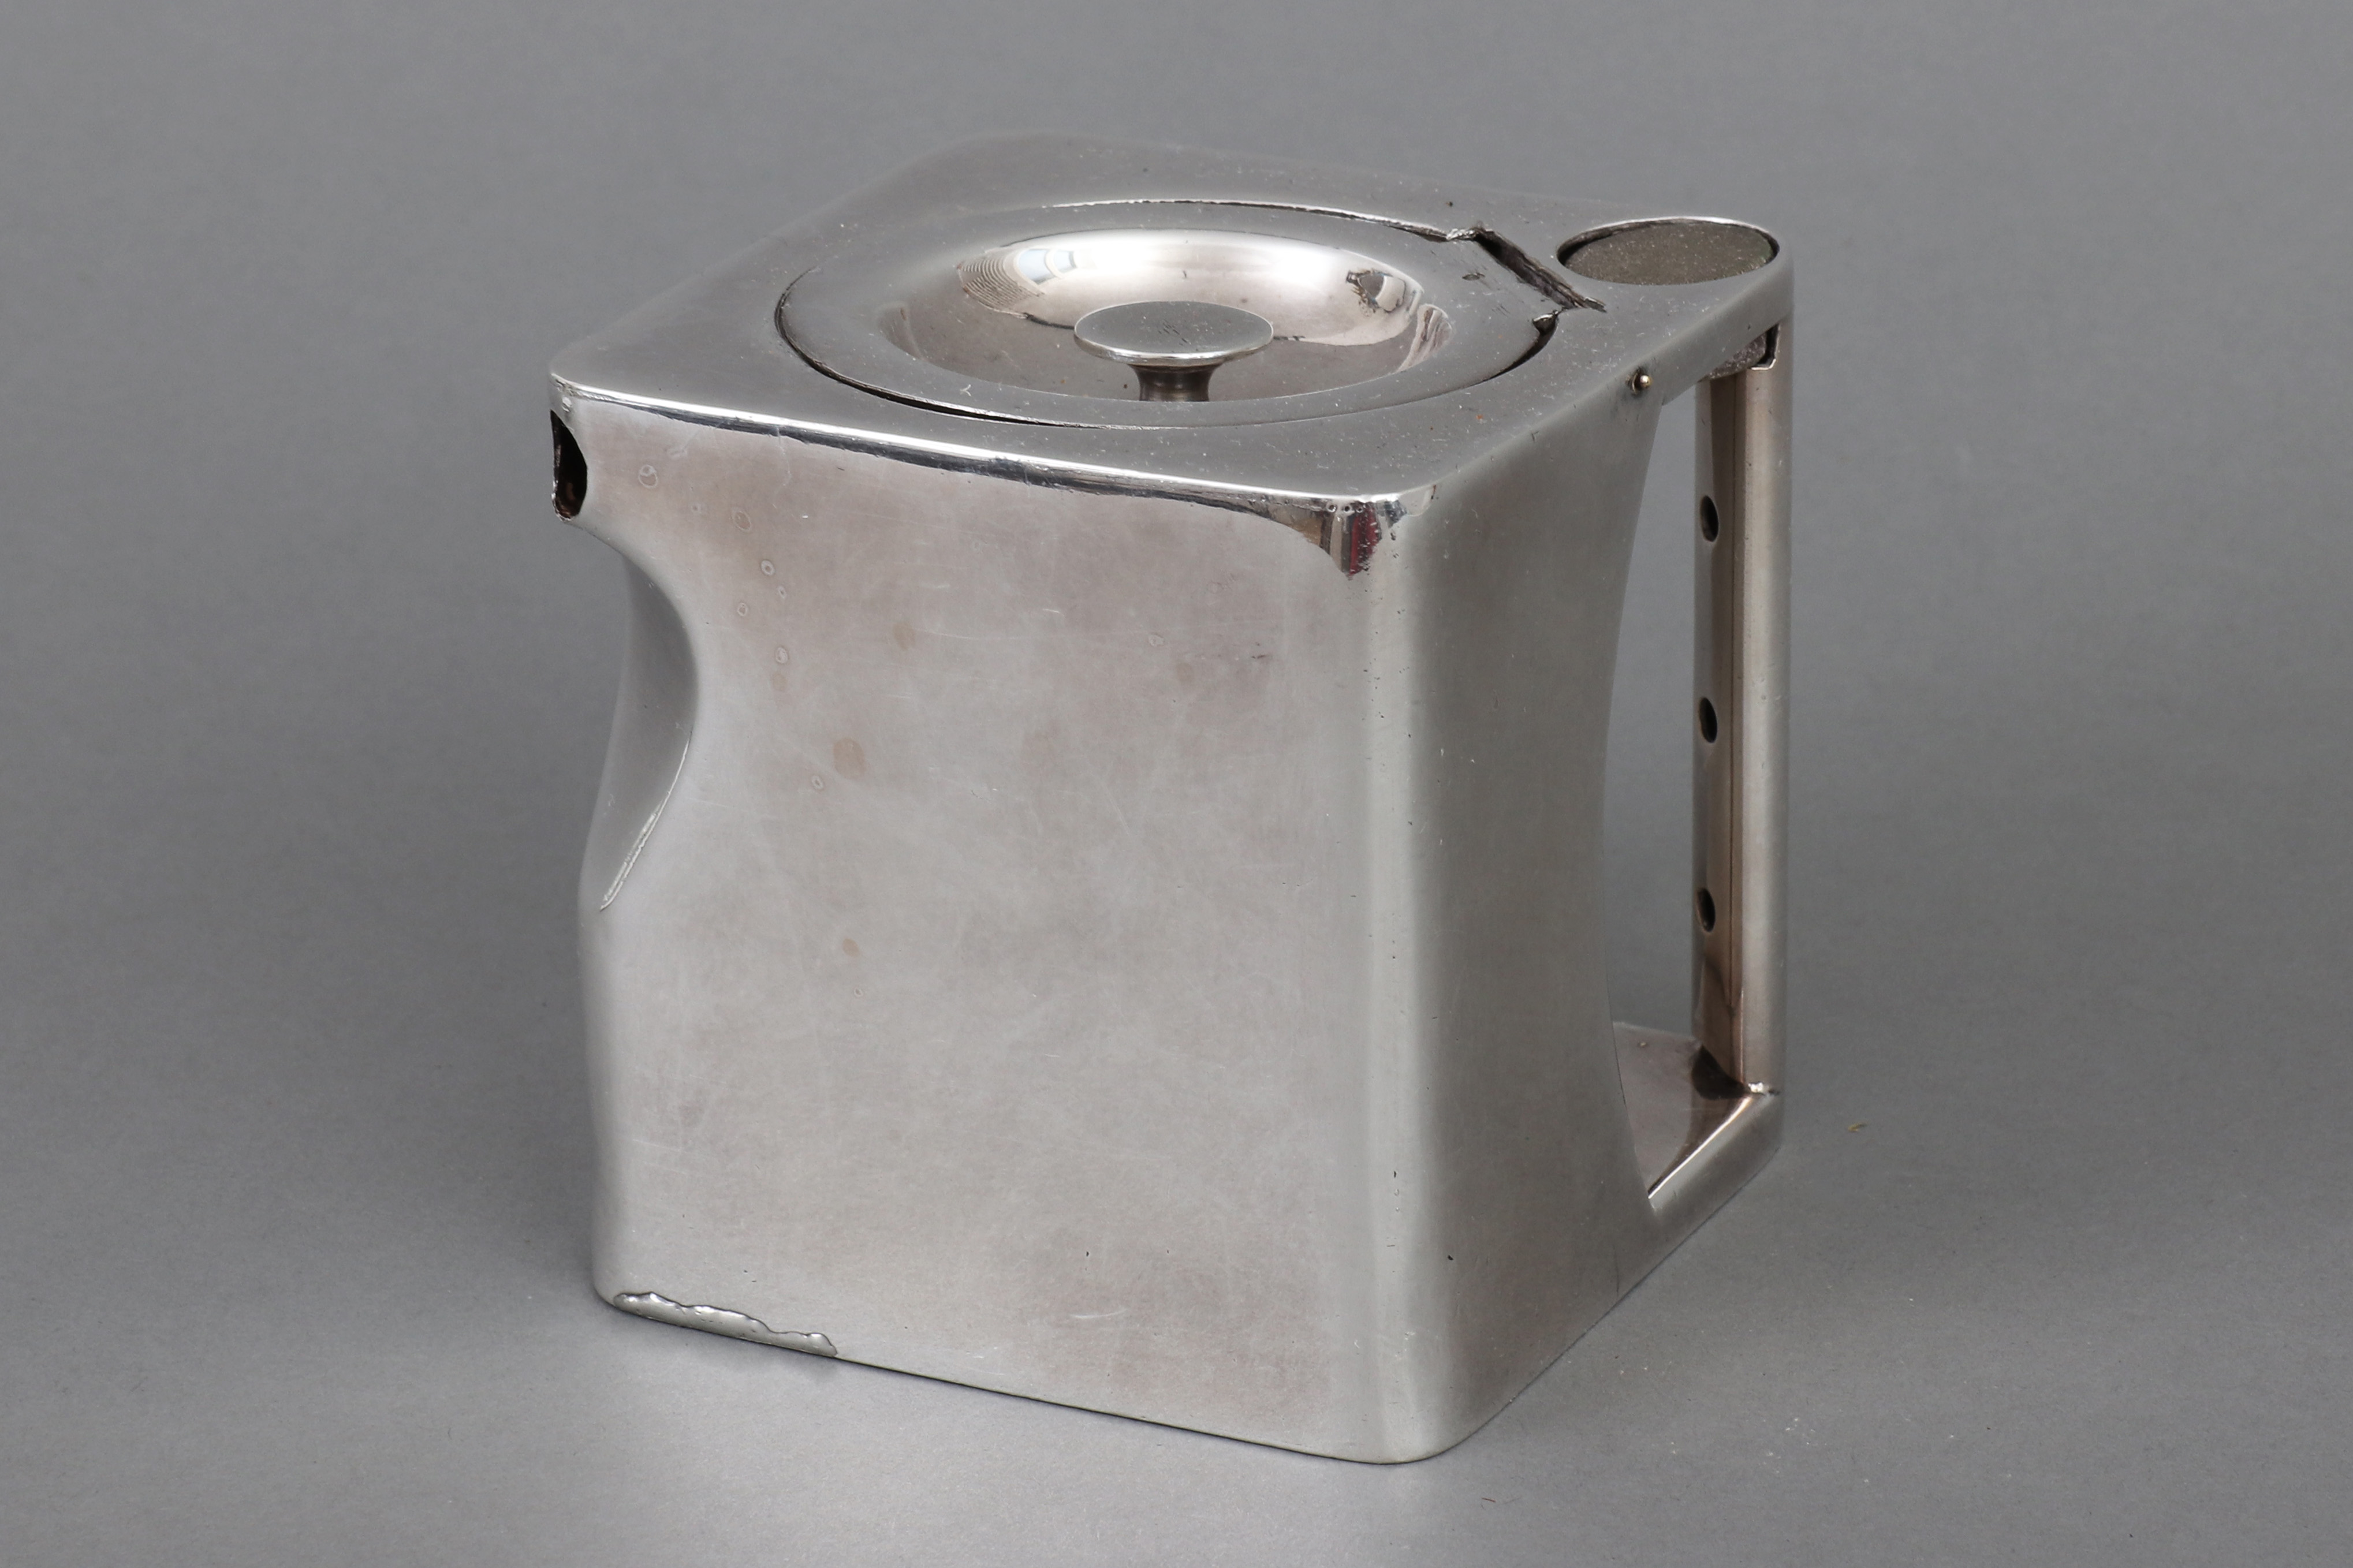 Versilberte Teekanne in Würfelform (¨The Cube¨)